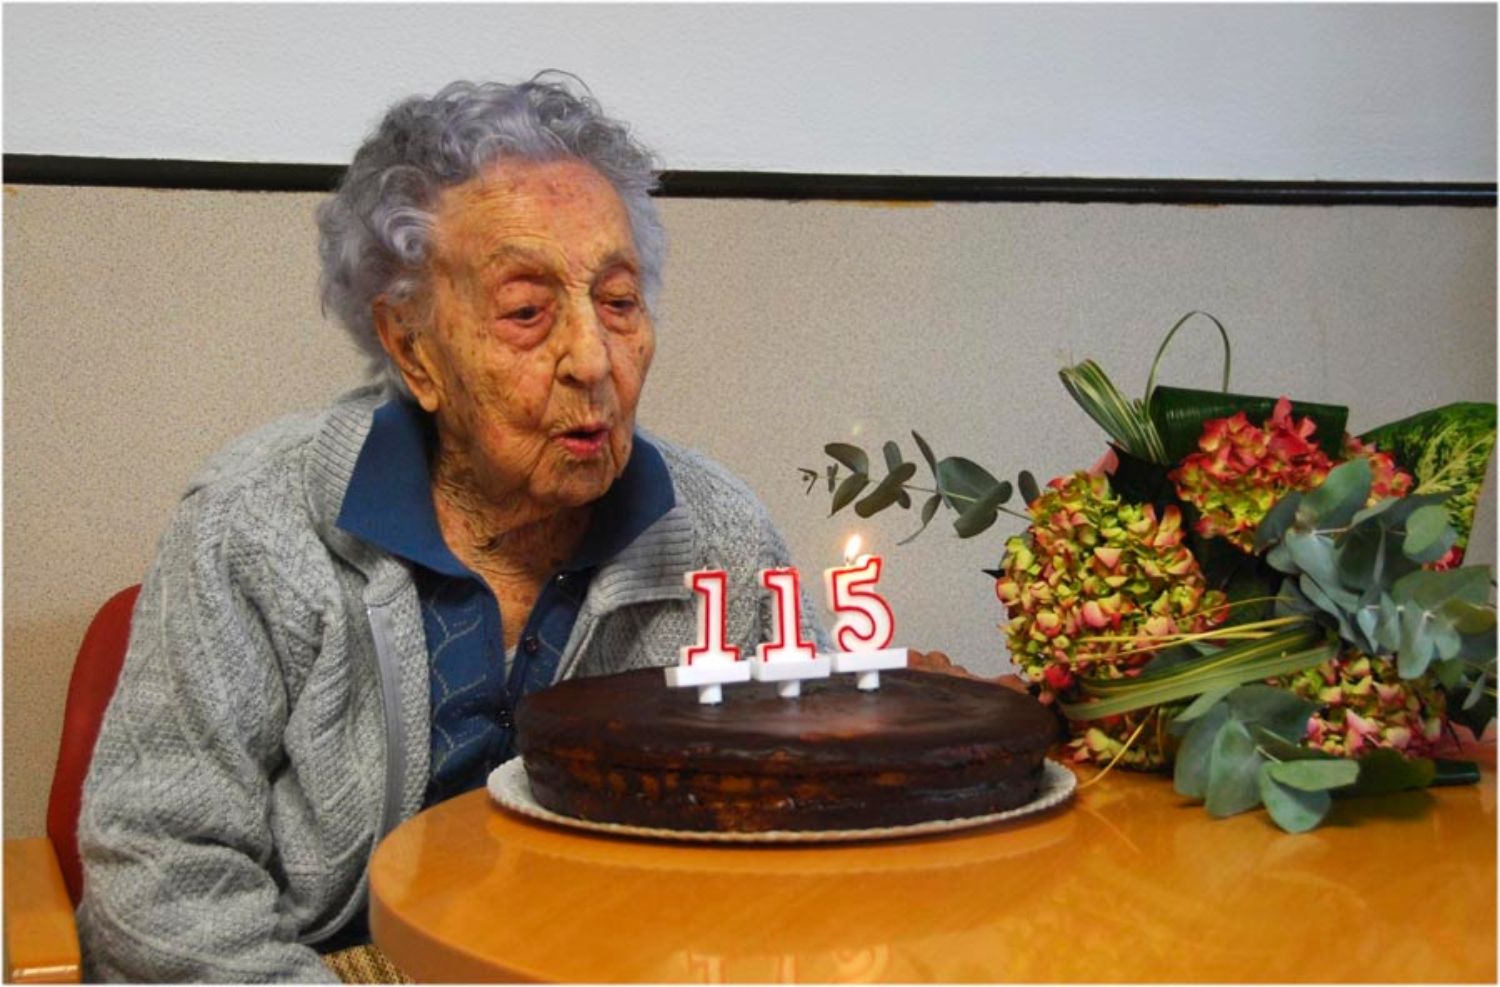 La española Maria Branyas se convierte en la persona más longeva del mundo con 115 años. Foto: Twitter